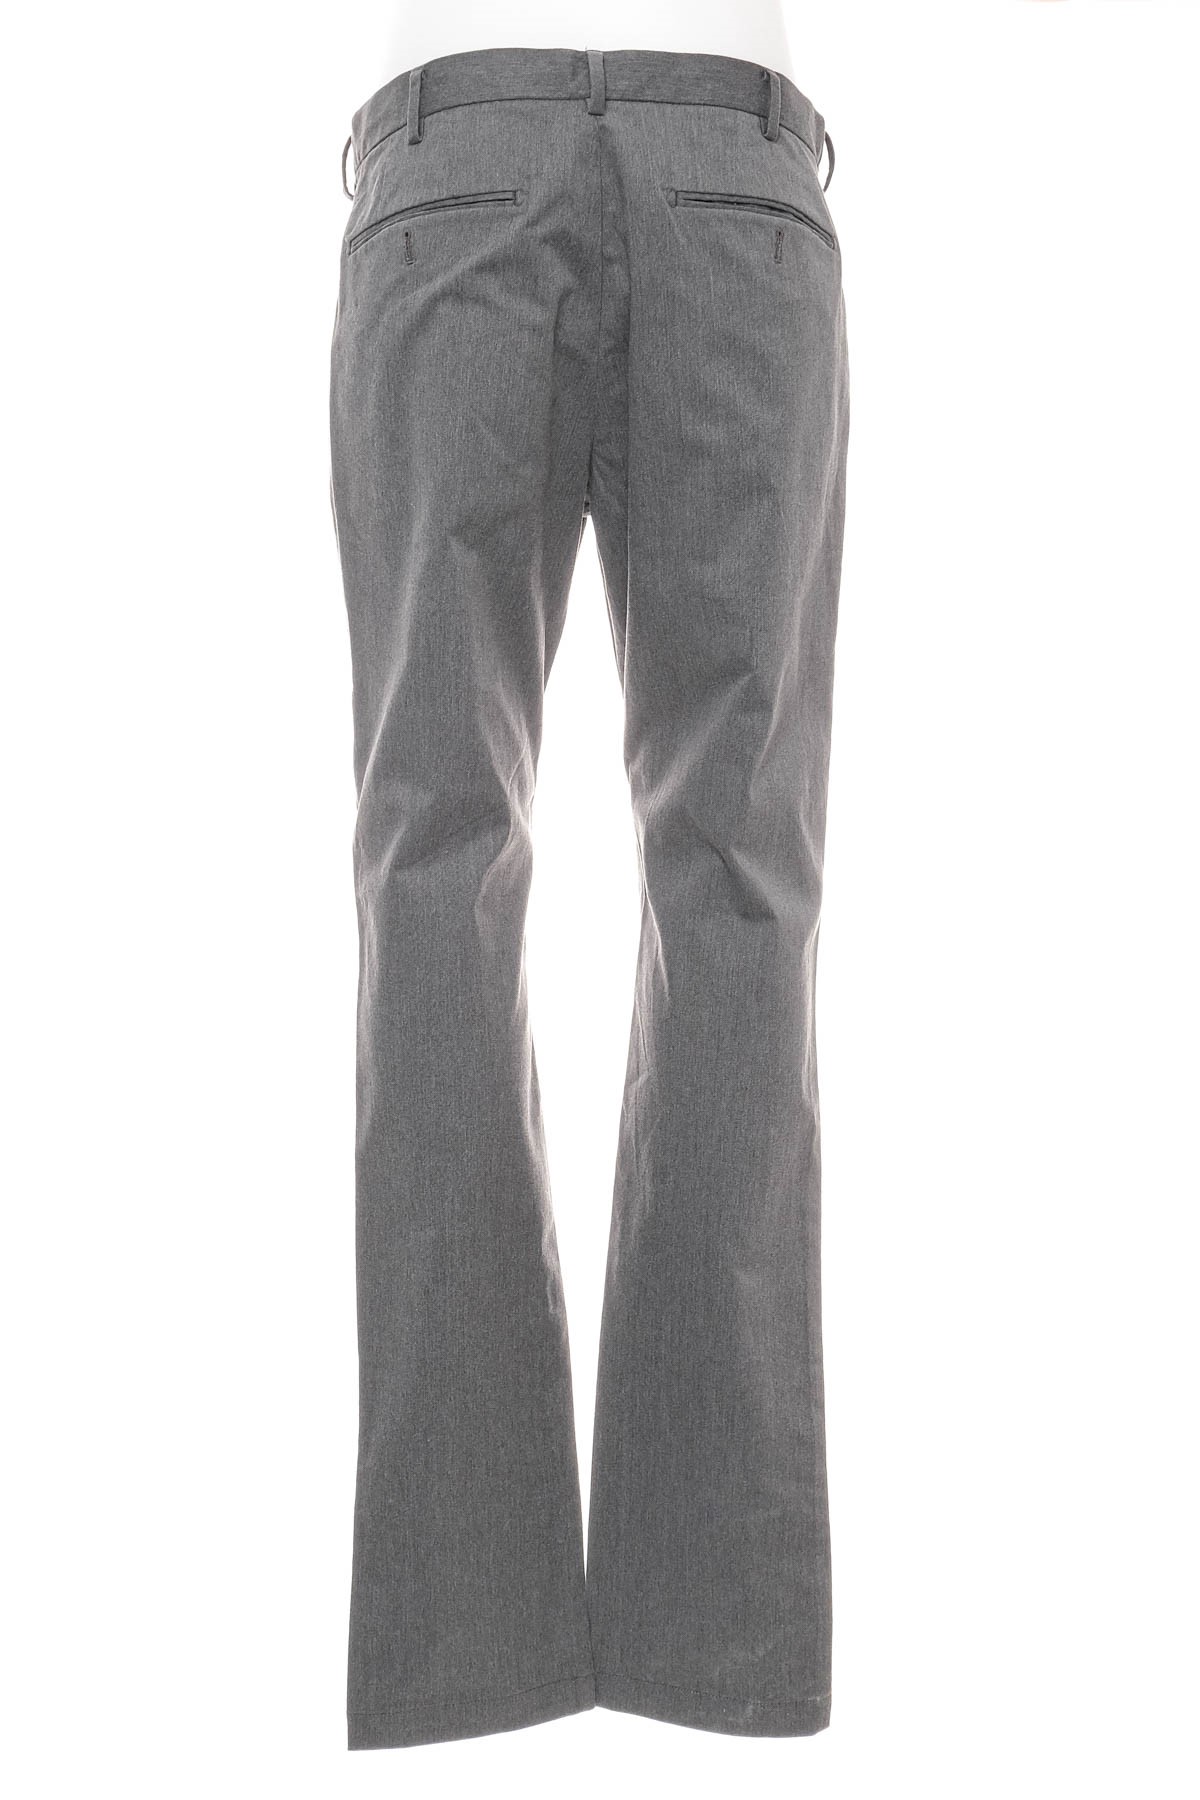 Men's trousers - UNIQLO - 1